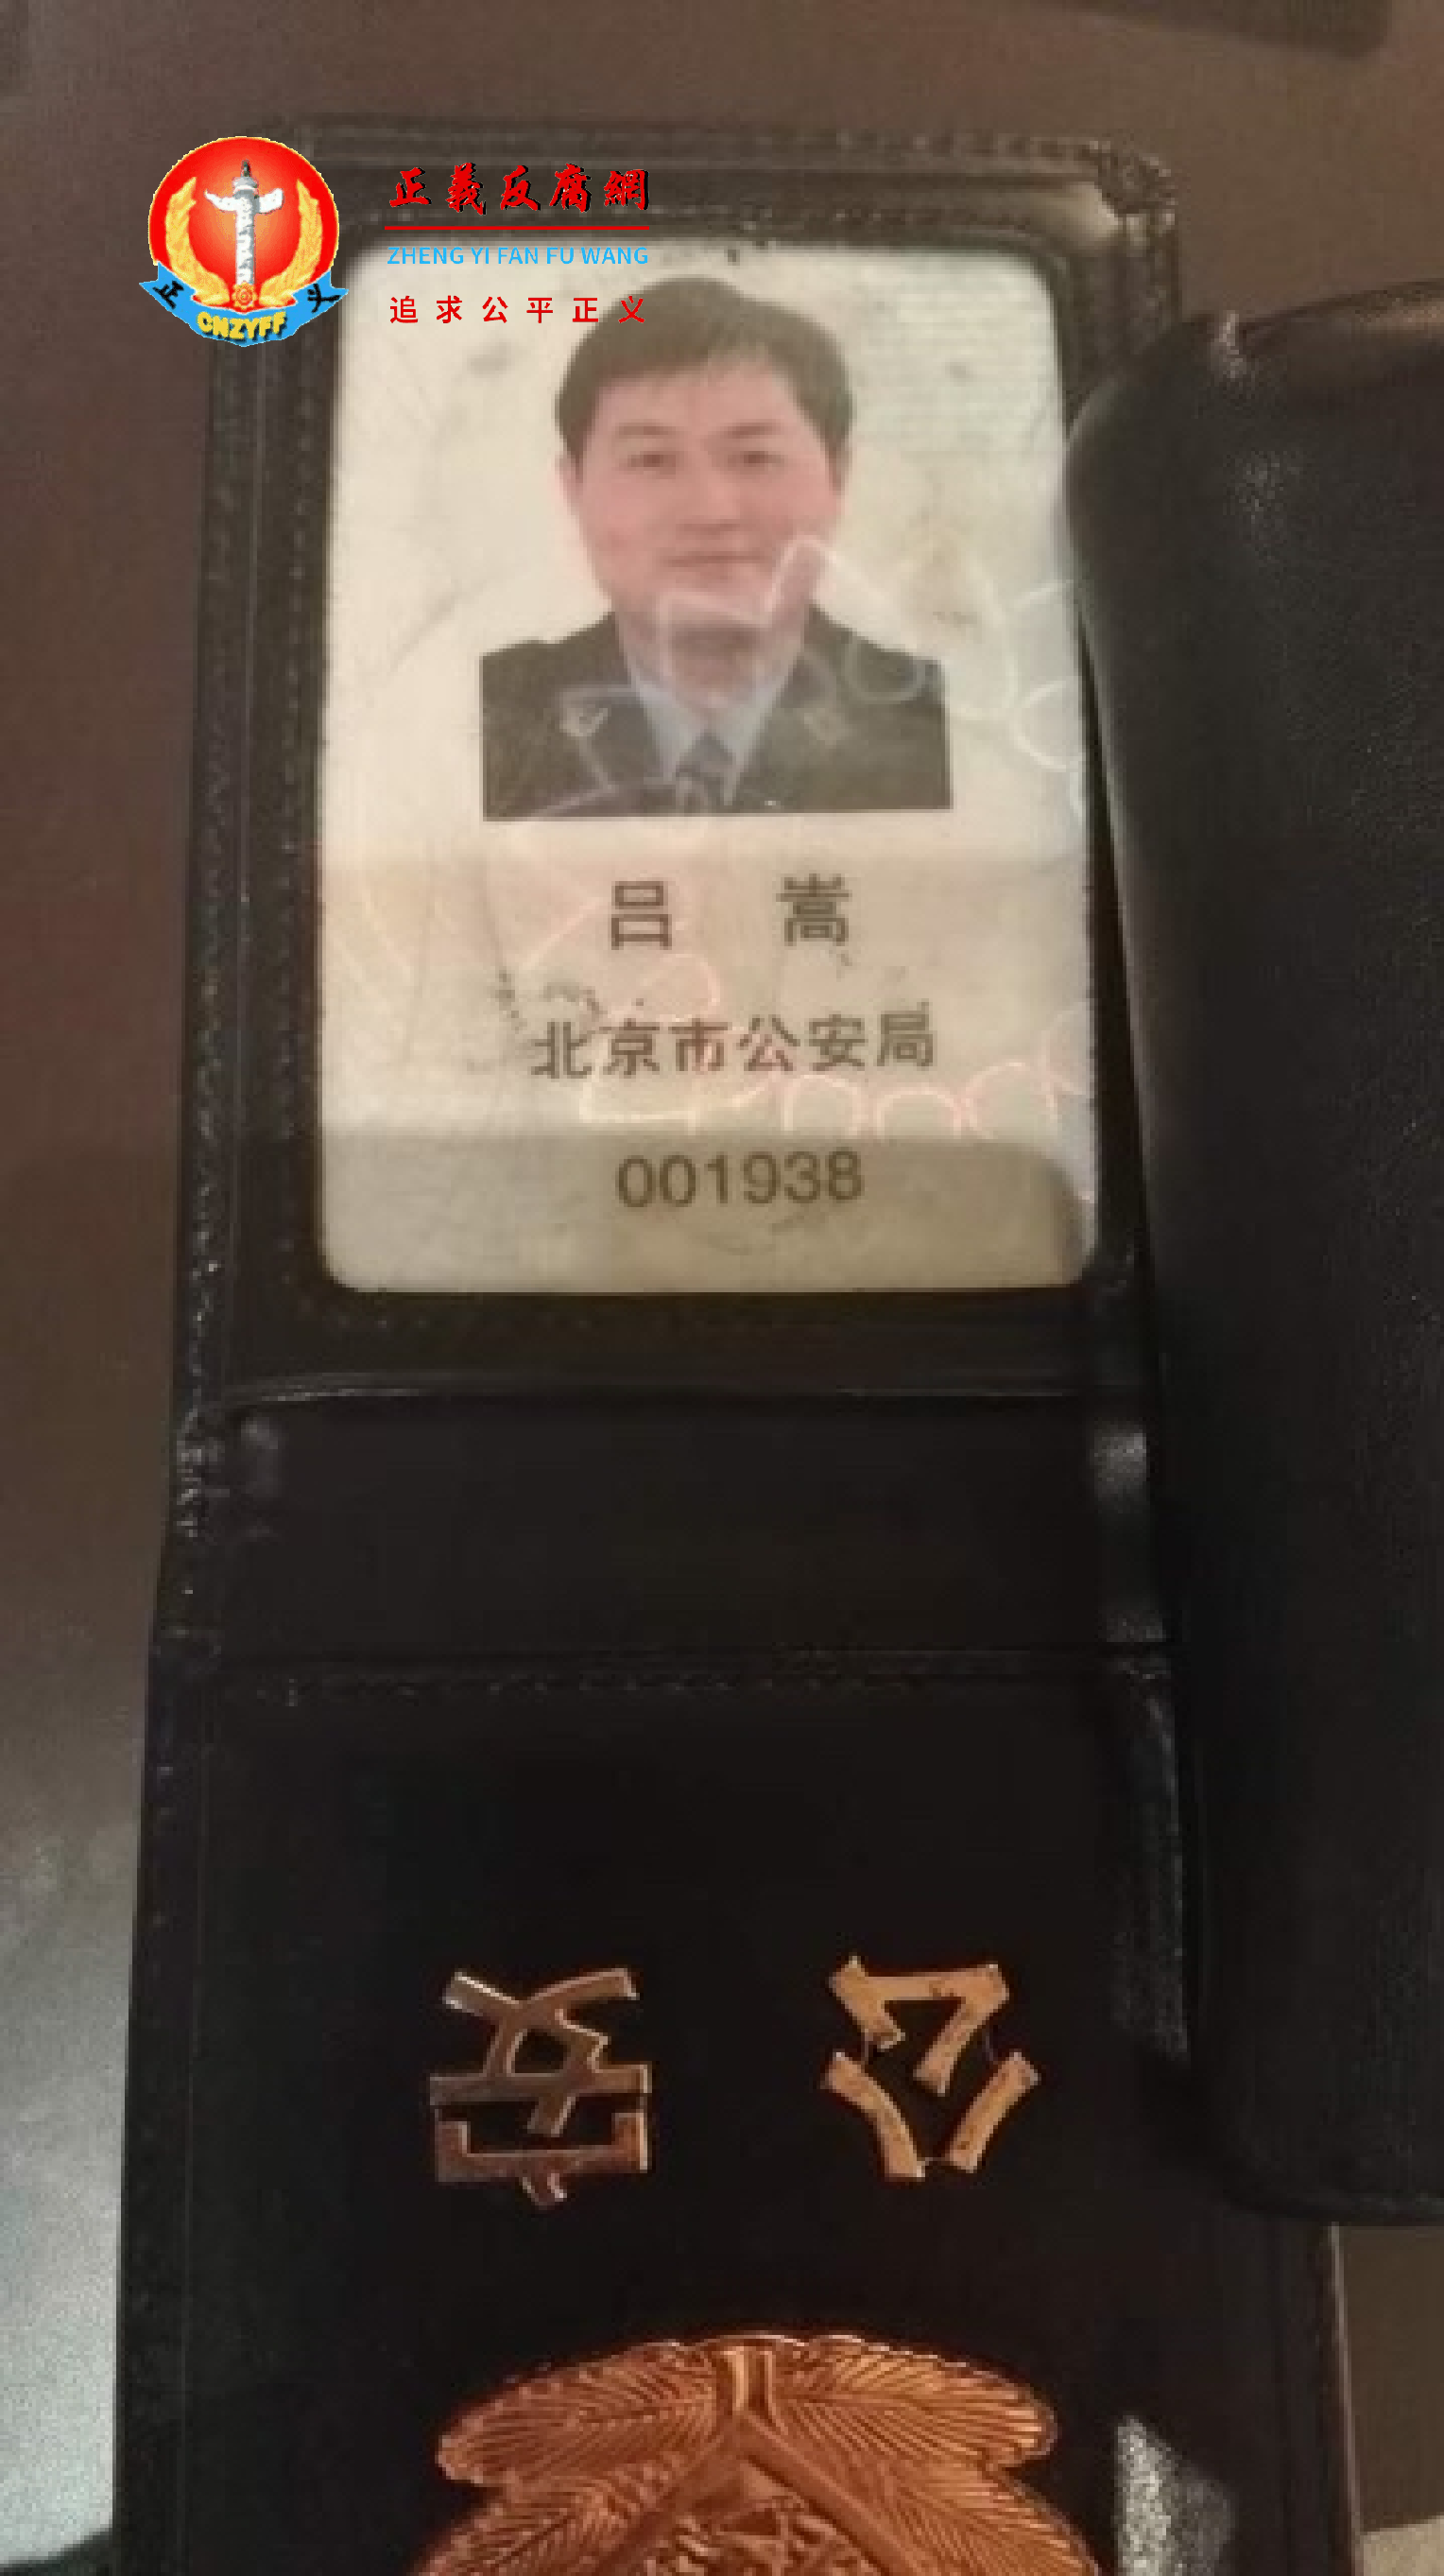 北京市公安局警官吕嵩向张雪怡出示的警官证。.png